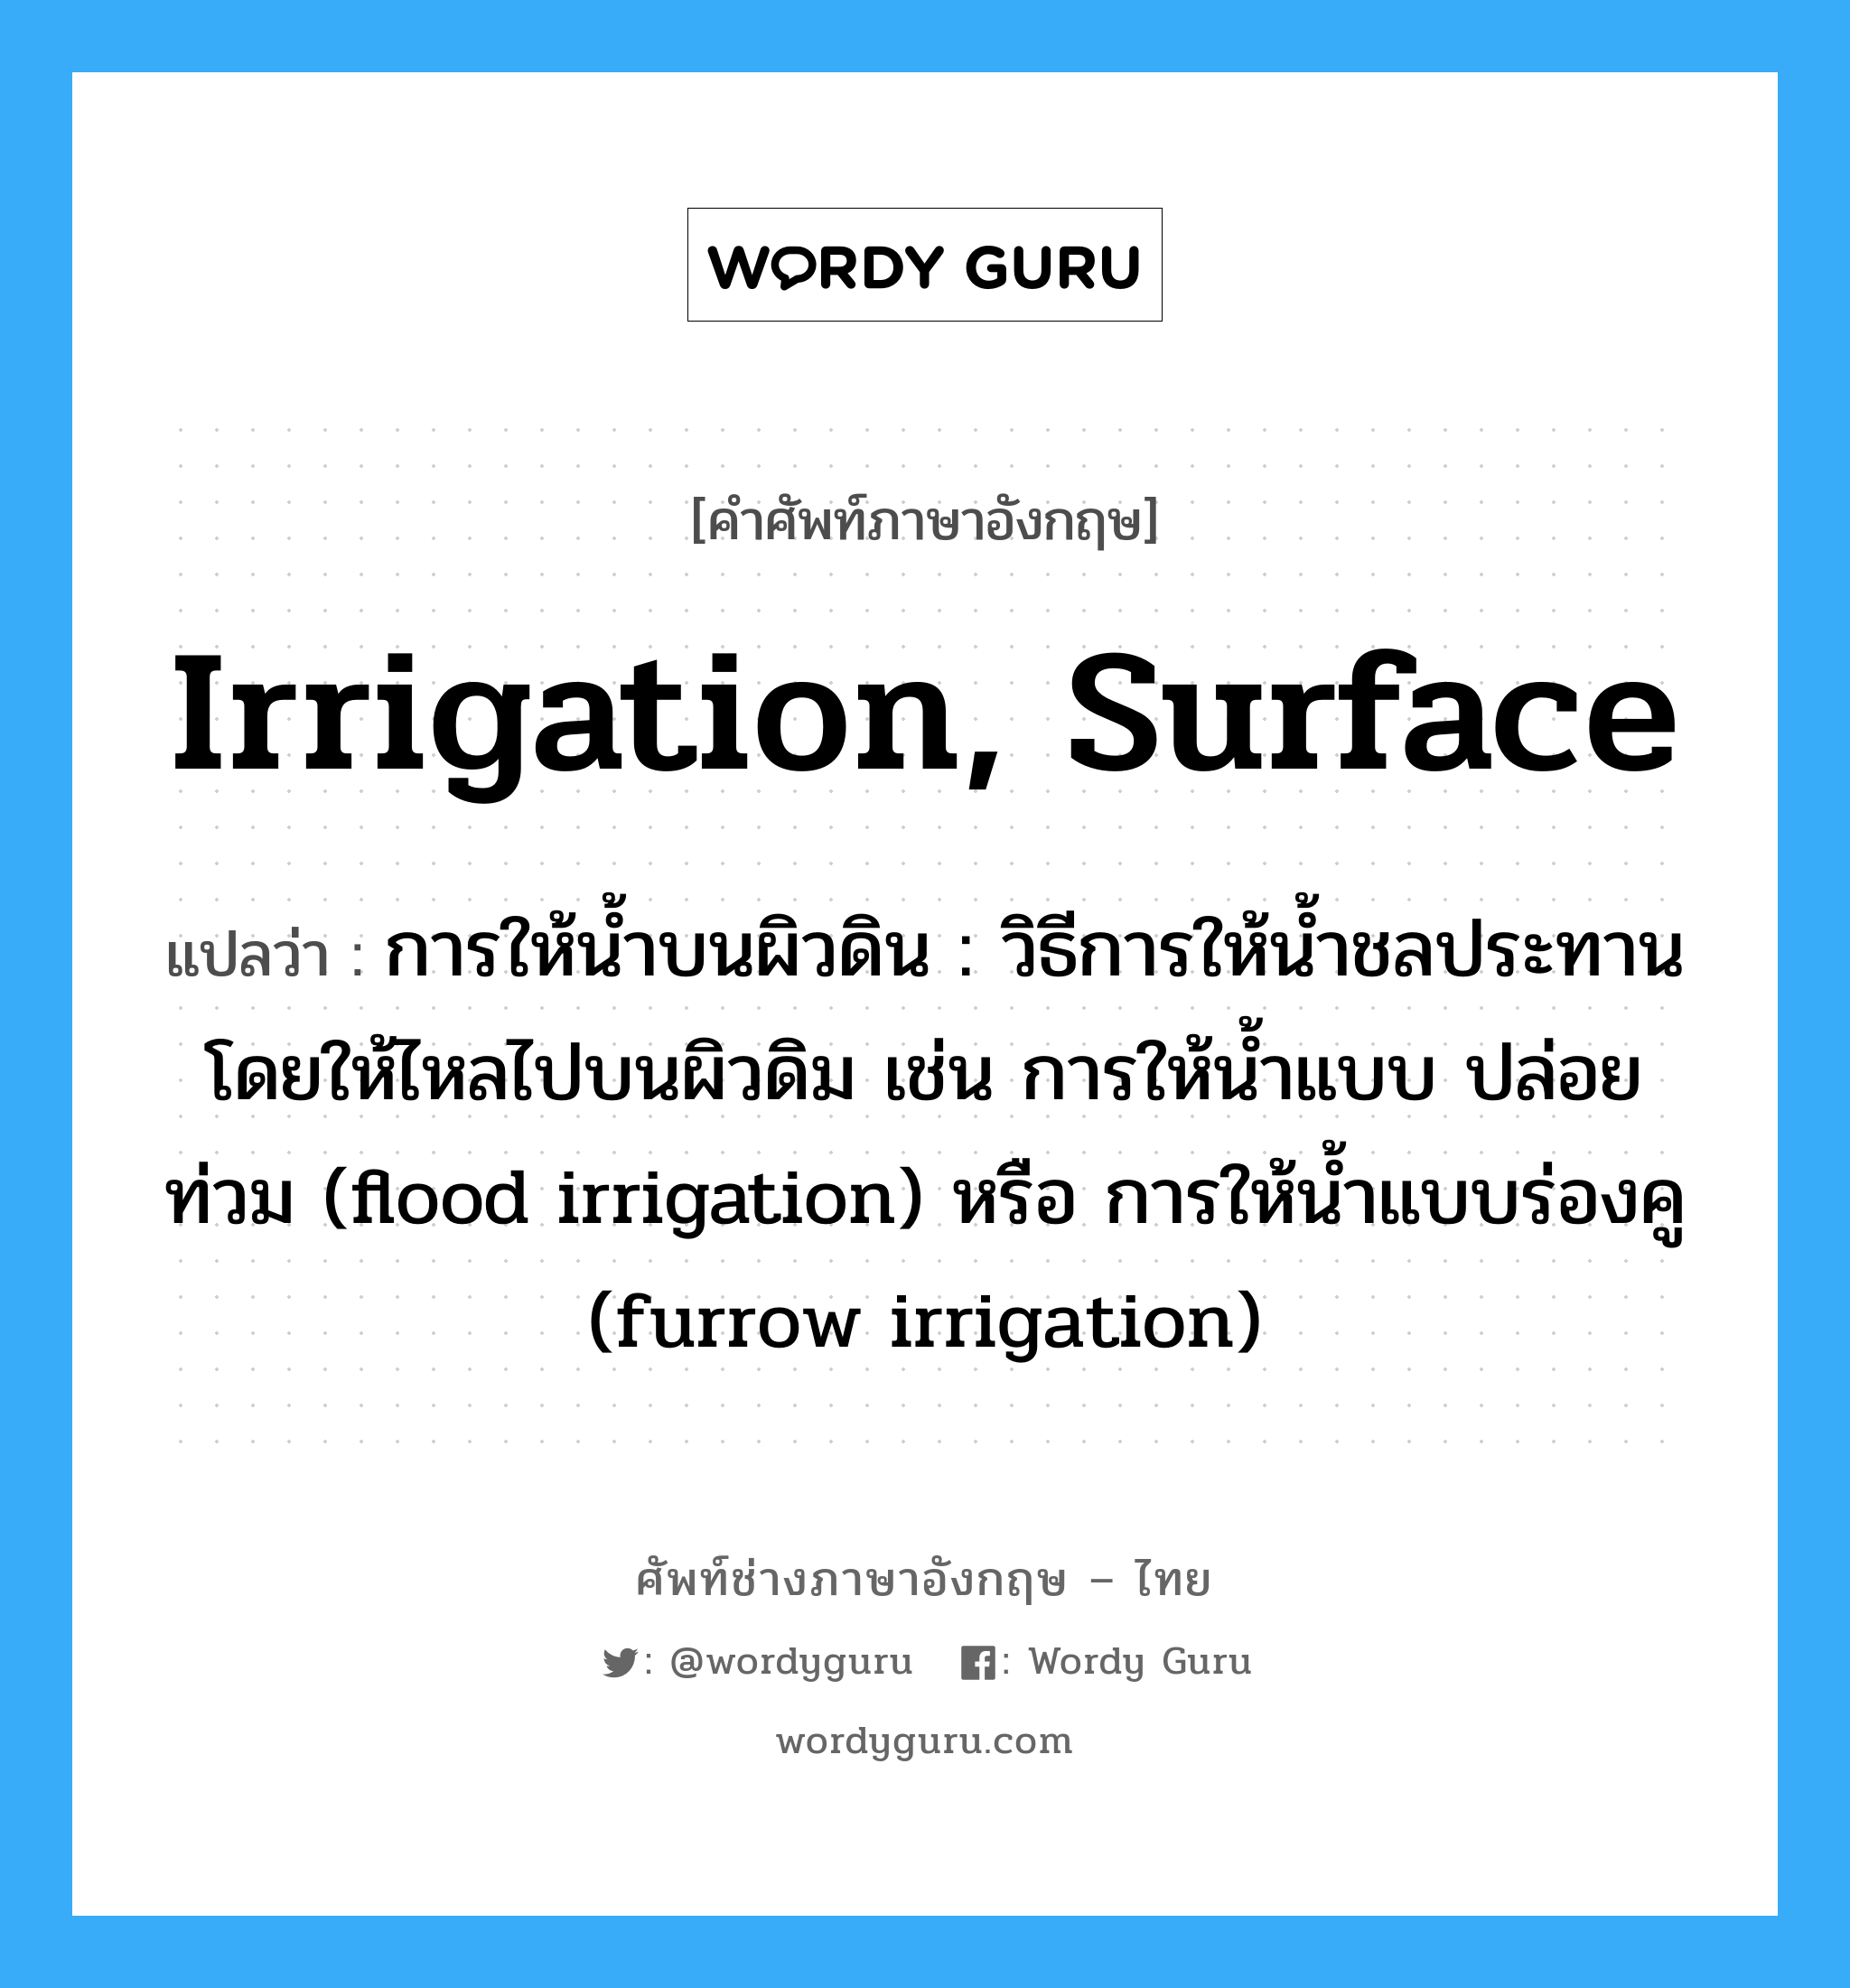 irrigation, surface แปลว่า?, คำศัพท์ช่างภาษาอังกฤษ - ไทย irrigation, surface คำศัพท์ภาษาอังกฤษ irrigation, surface แปลว่า การให้น้ำบนผิวดิน : วิธีการให้น้ำชลประทานโดยให้ไหลไปบนผิวดิม เช่น การให้น้ำแบบ ปล่อยท่วม (flood irrigation) หรือ การให้น้ำแบบร่องคู (furrow irrigation)